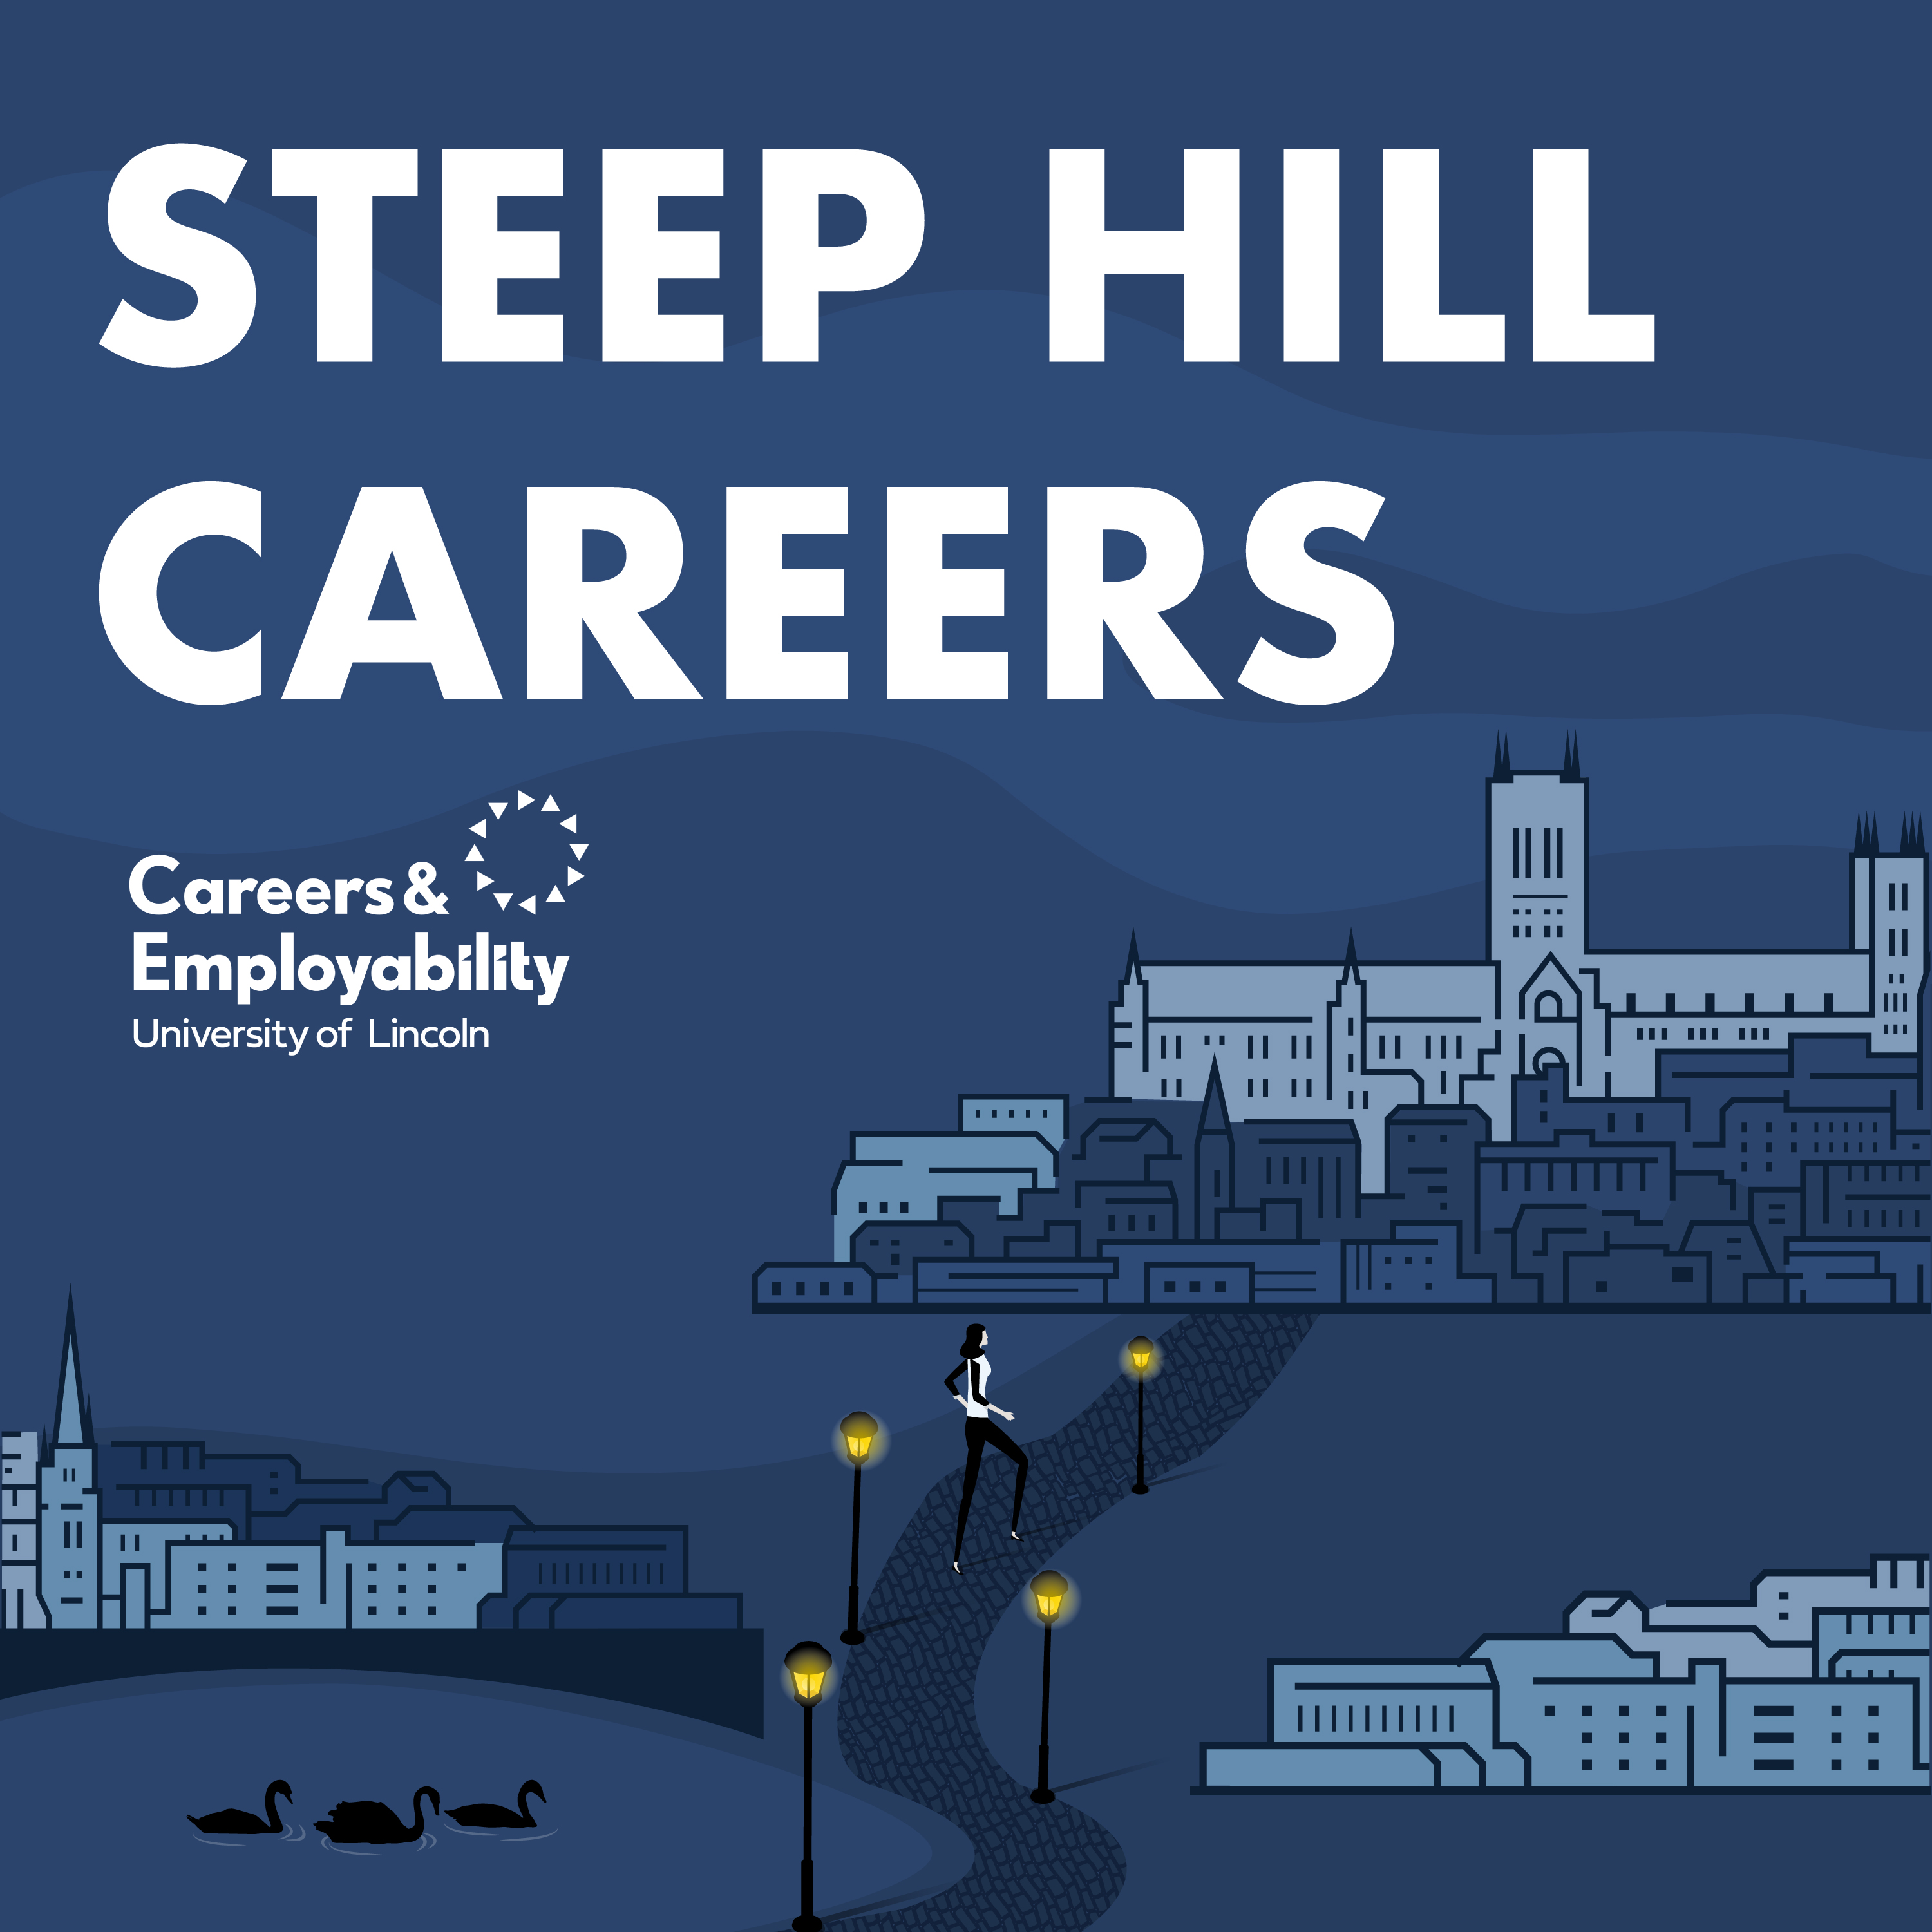 Steep Hill Careers